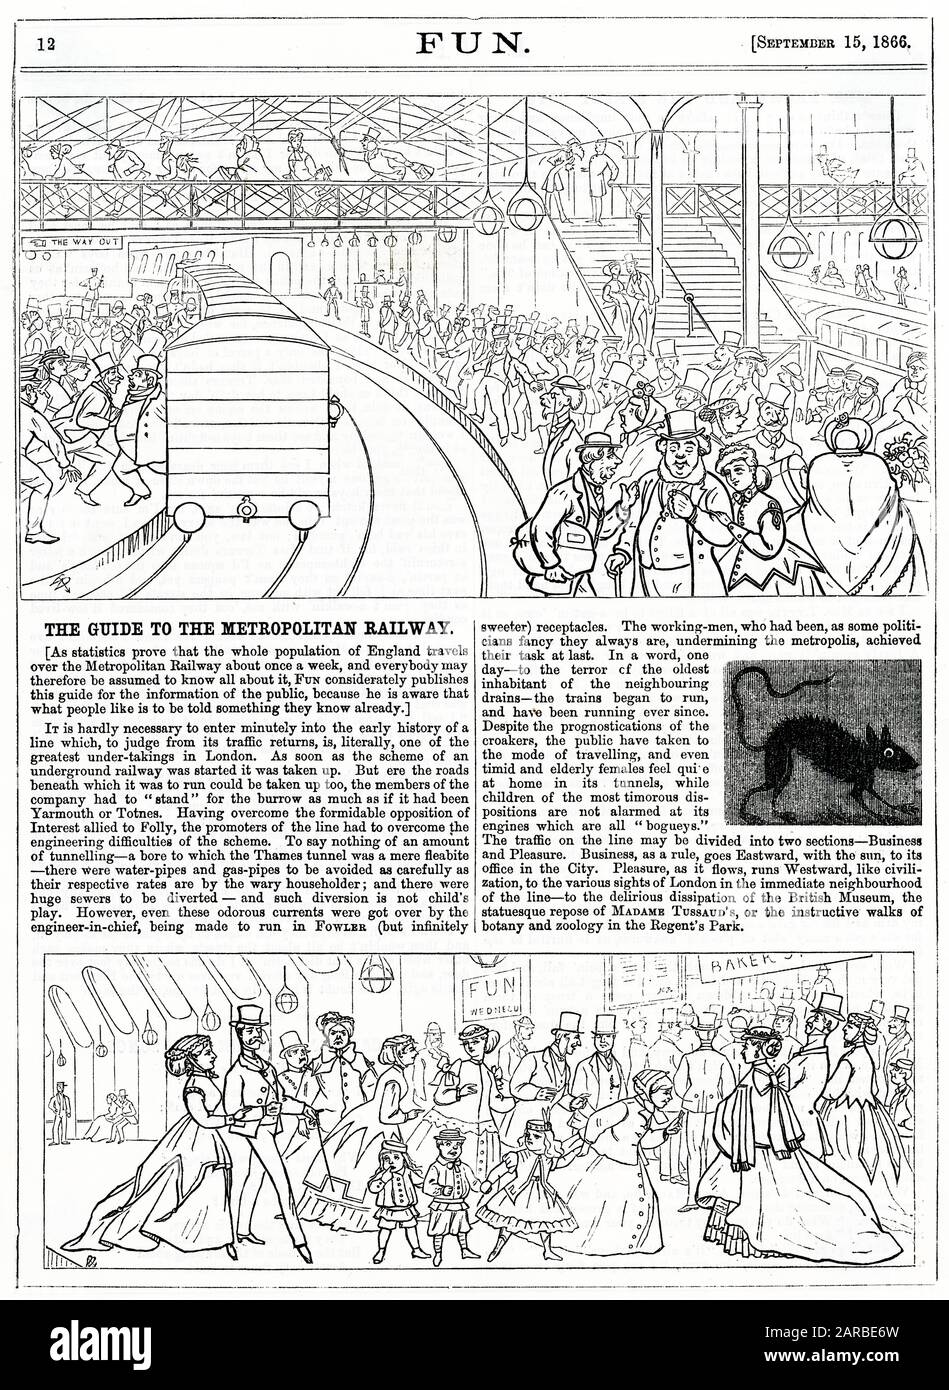 Zeichentrickfilme in 'Fun', 1866. Der Guide zur Metropolitan Railway. Ein humorvoller Kommentar über die Beliebtheit der neuen Londoner U-Bahn, der Personen zeigt, die geschäftlich und privat unterwegs sind, und einer der „ältesten Bewohner“ der unterirdischen Kanalisation, eine verängstigte Ratte! Stockfoto